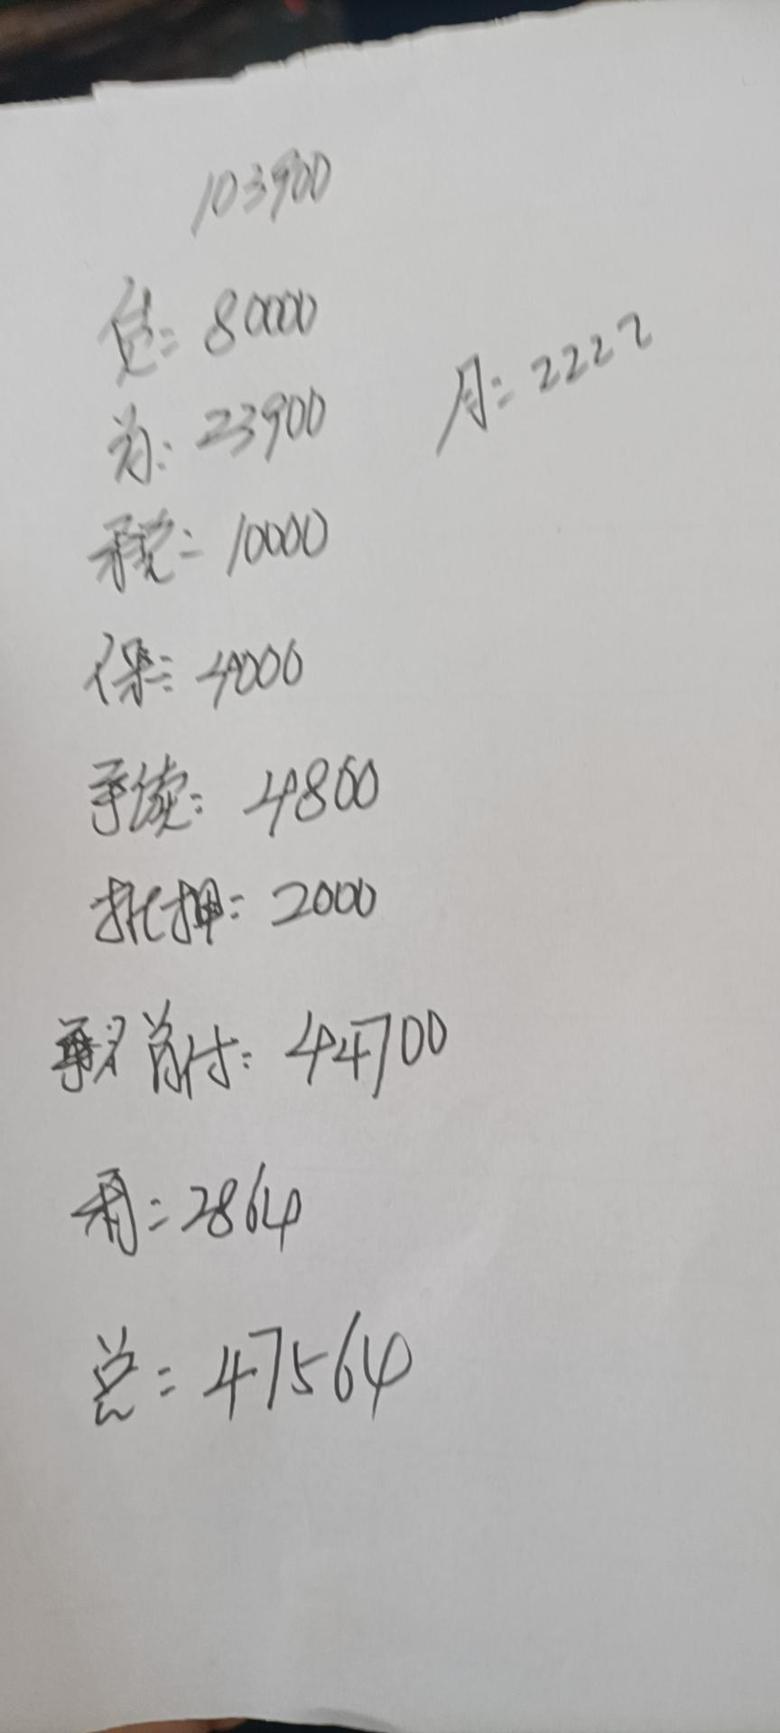 奕炫max 首付42000分36期月供2200能入手嘛第一次买???潮爸版